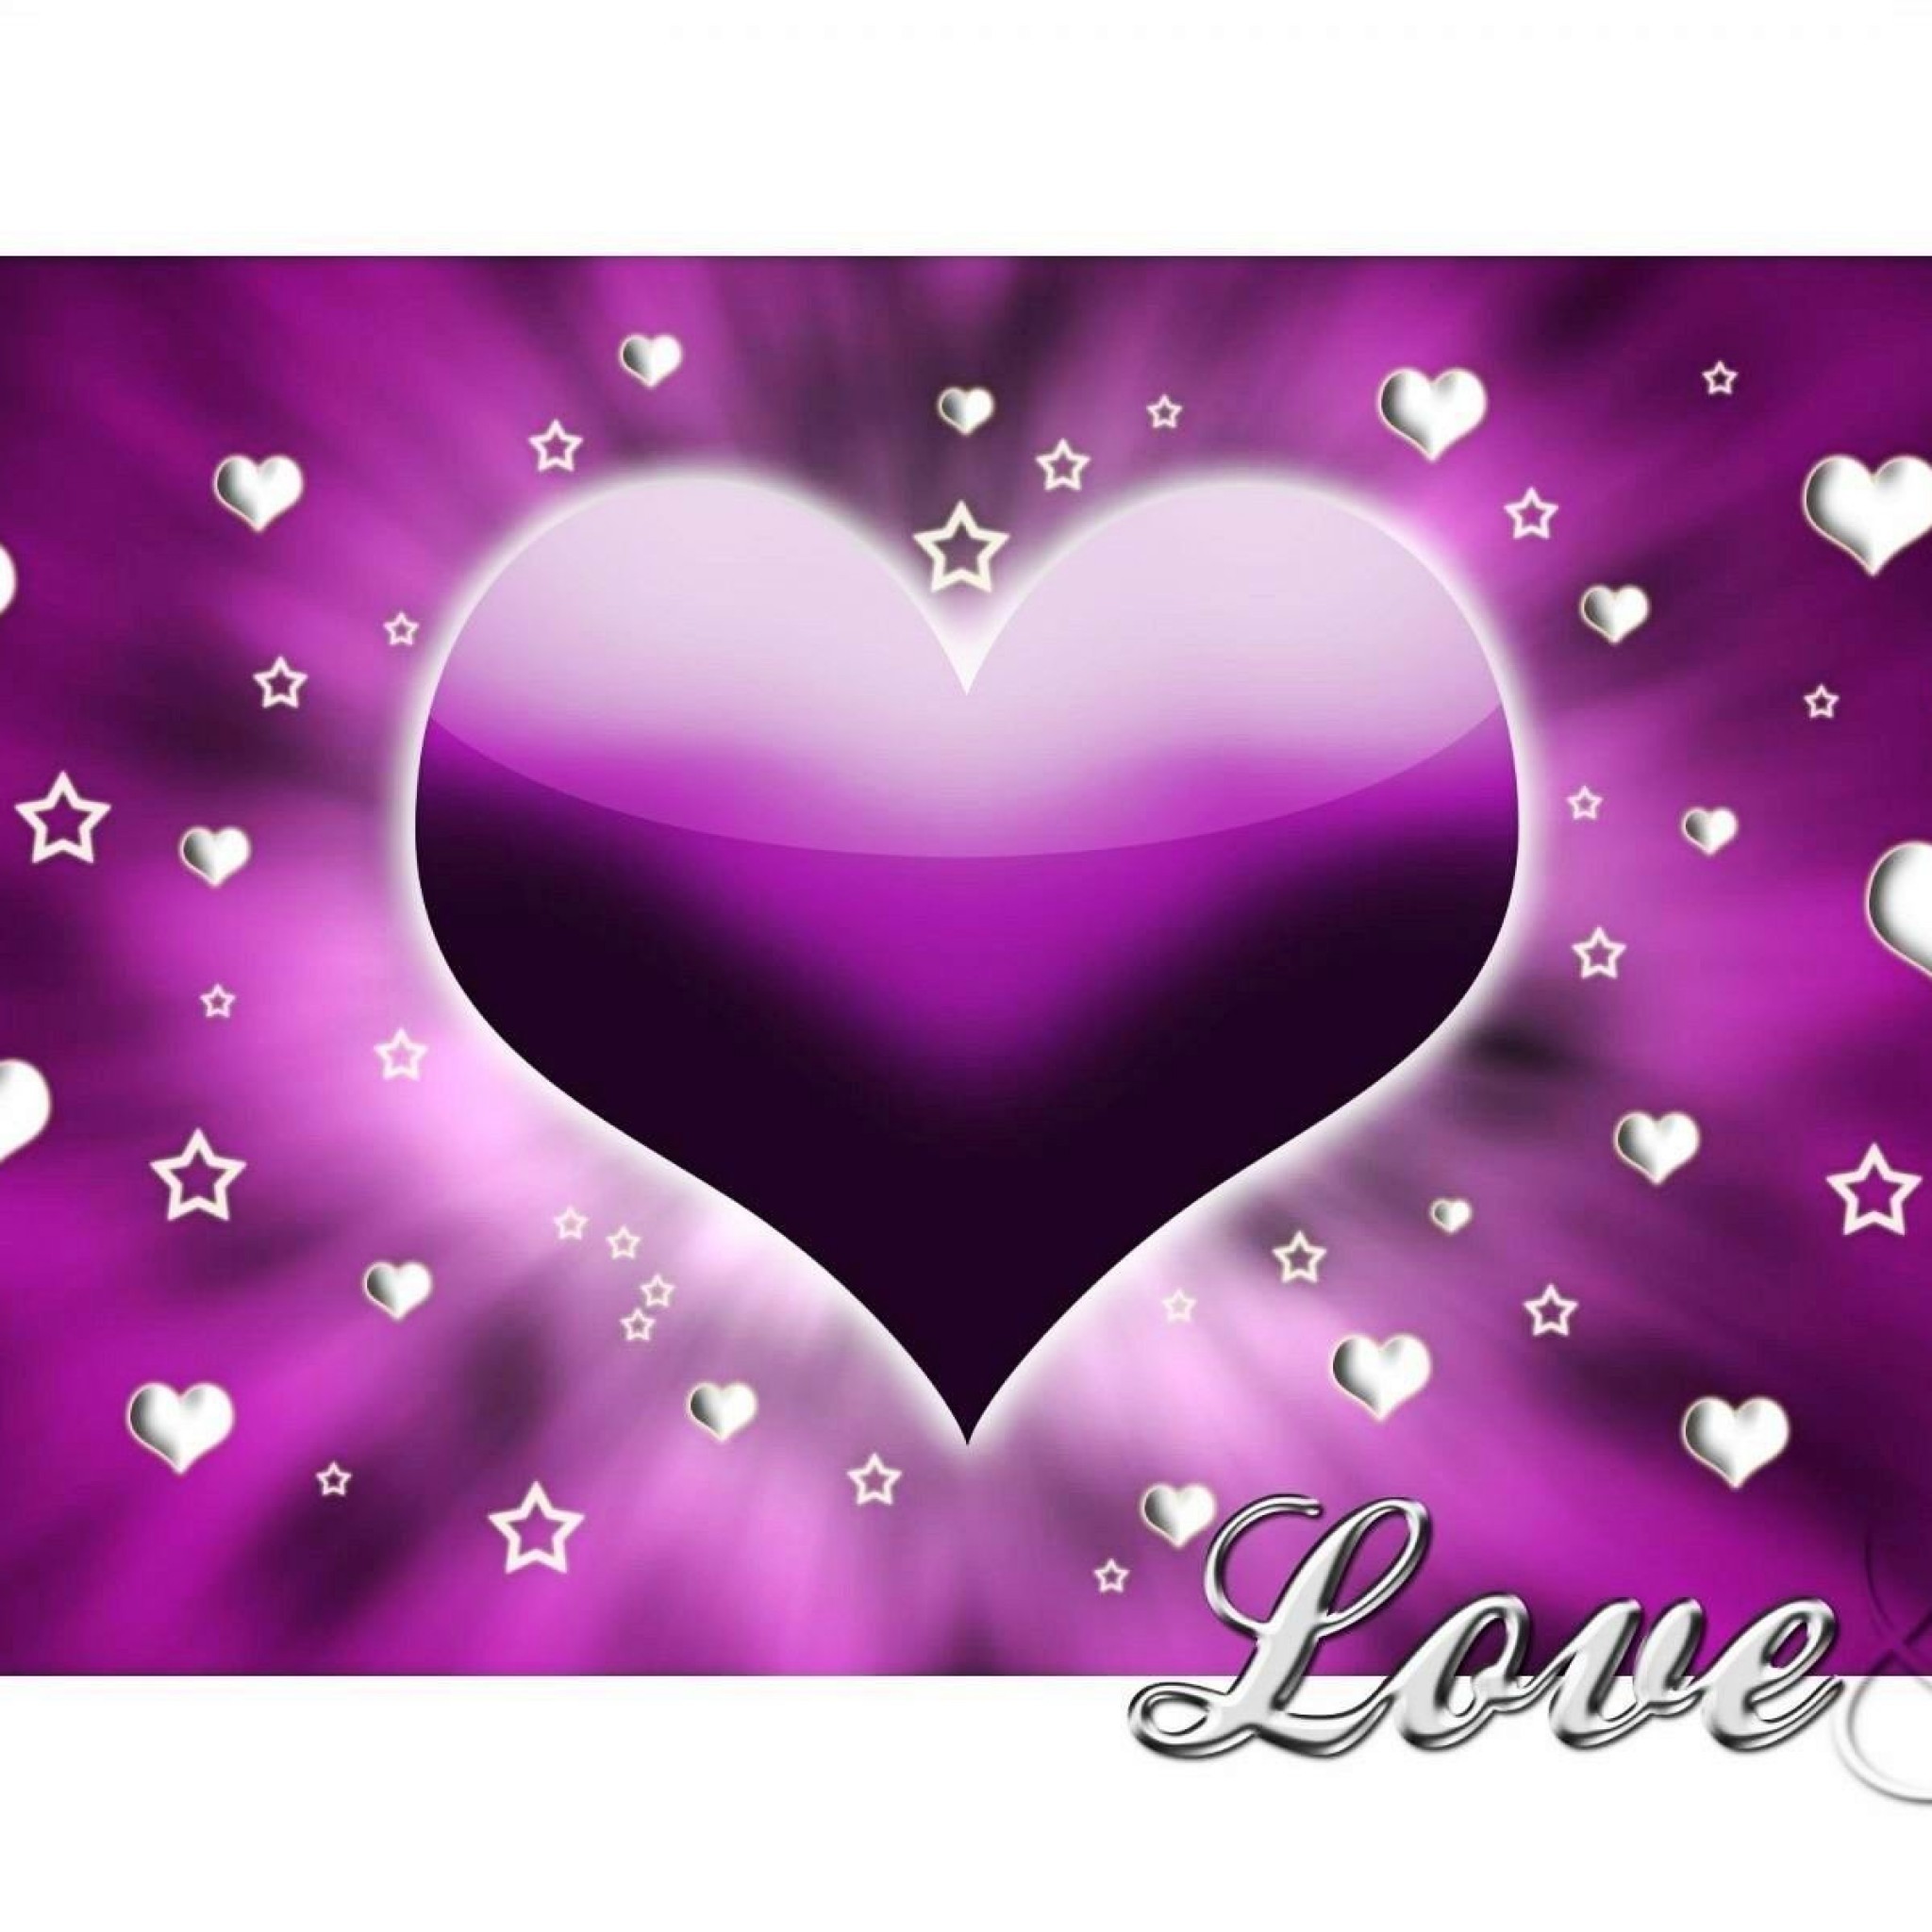 Heart Purple White Love Image Wallpaper - Purple Love Heart - HD Wallpaper 